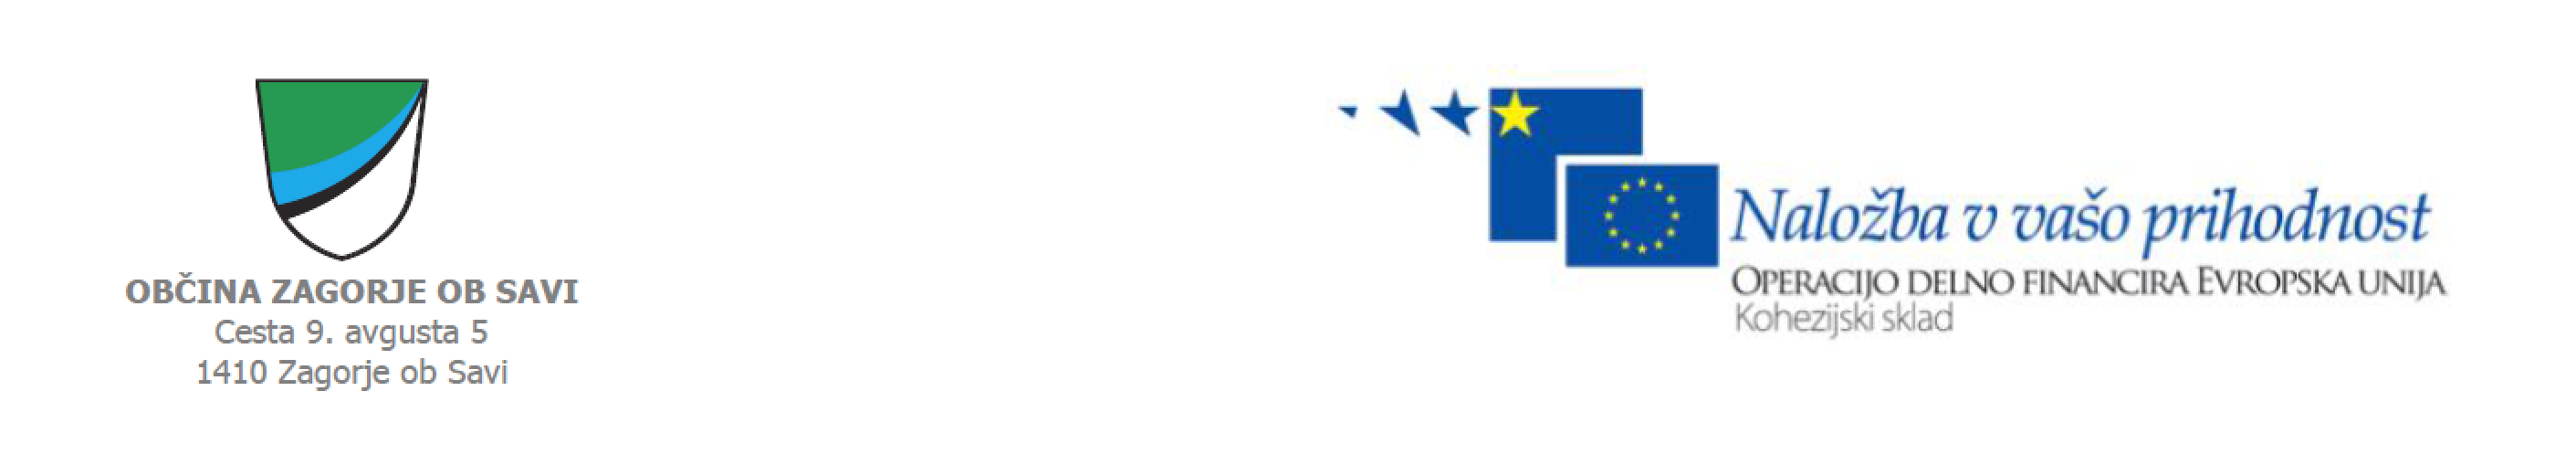 ZAG in EU logo skupaj.png